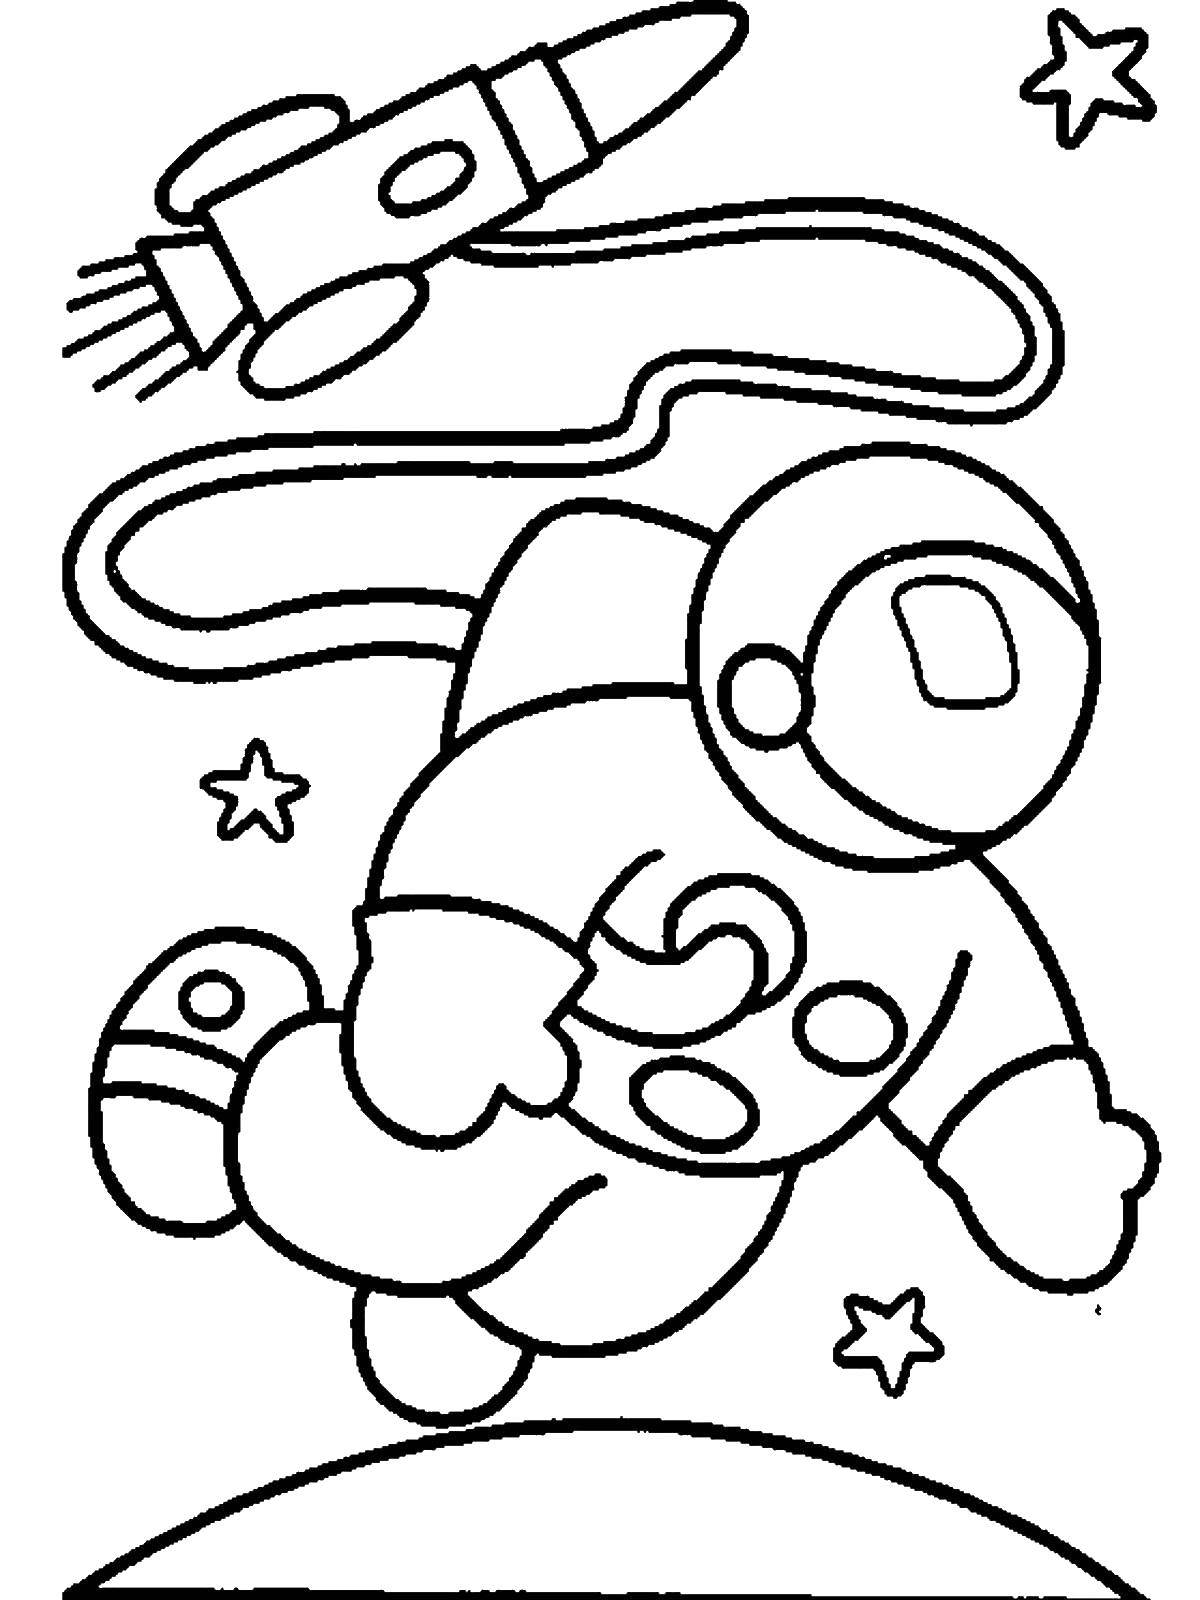 Поделка ко дню космонавтики шаблоны распечатать. Космос раскраска для детей. Раскраска. В космосе. Космонавт раскраска для детей. Раскраска на тему космос для детей.